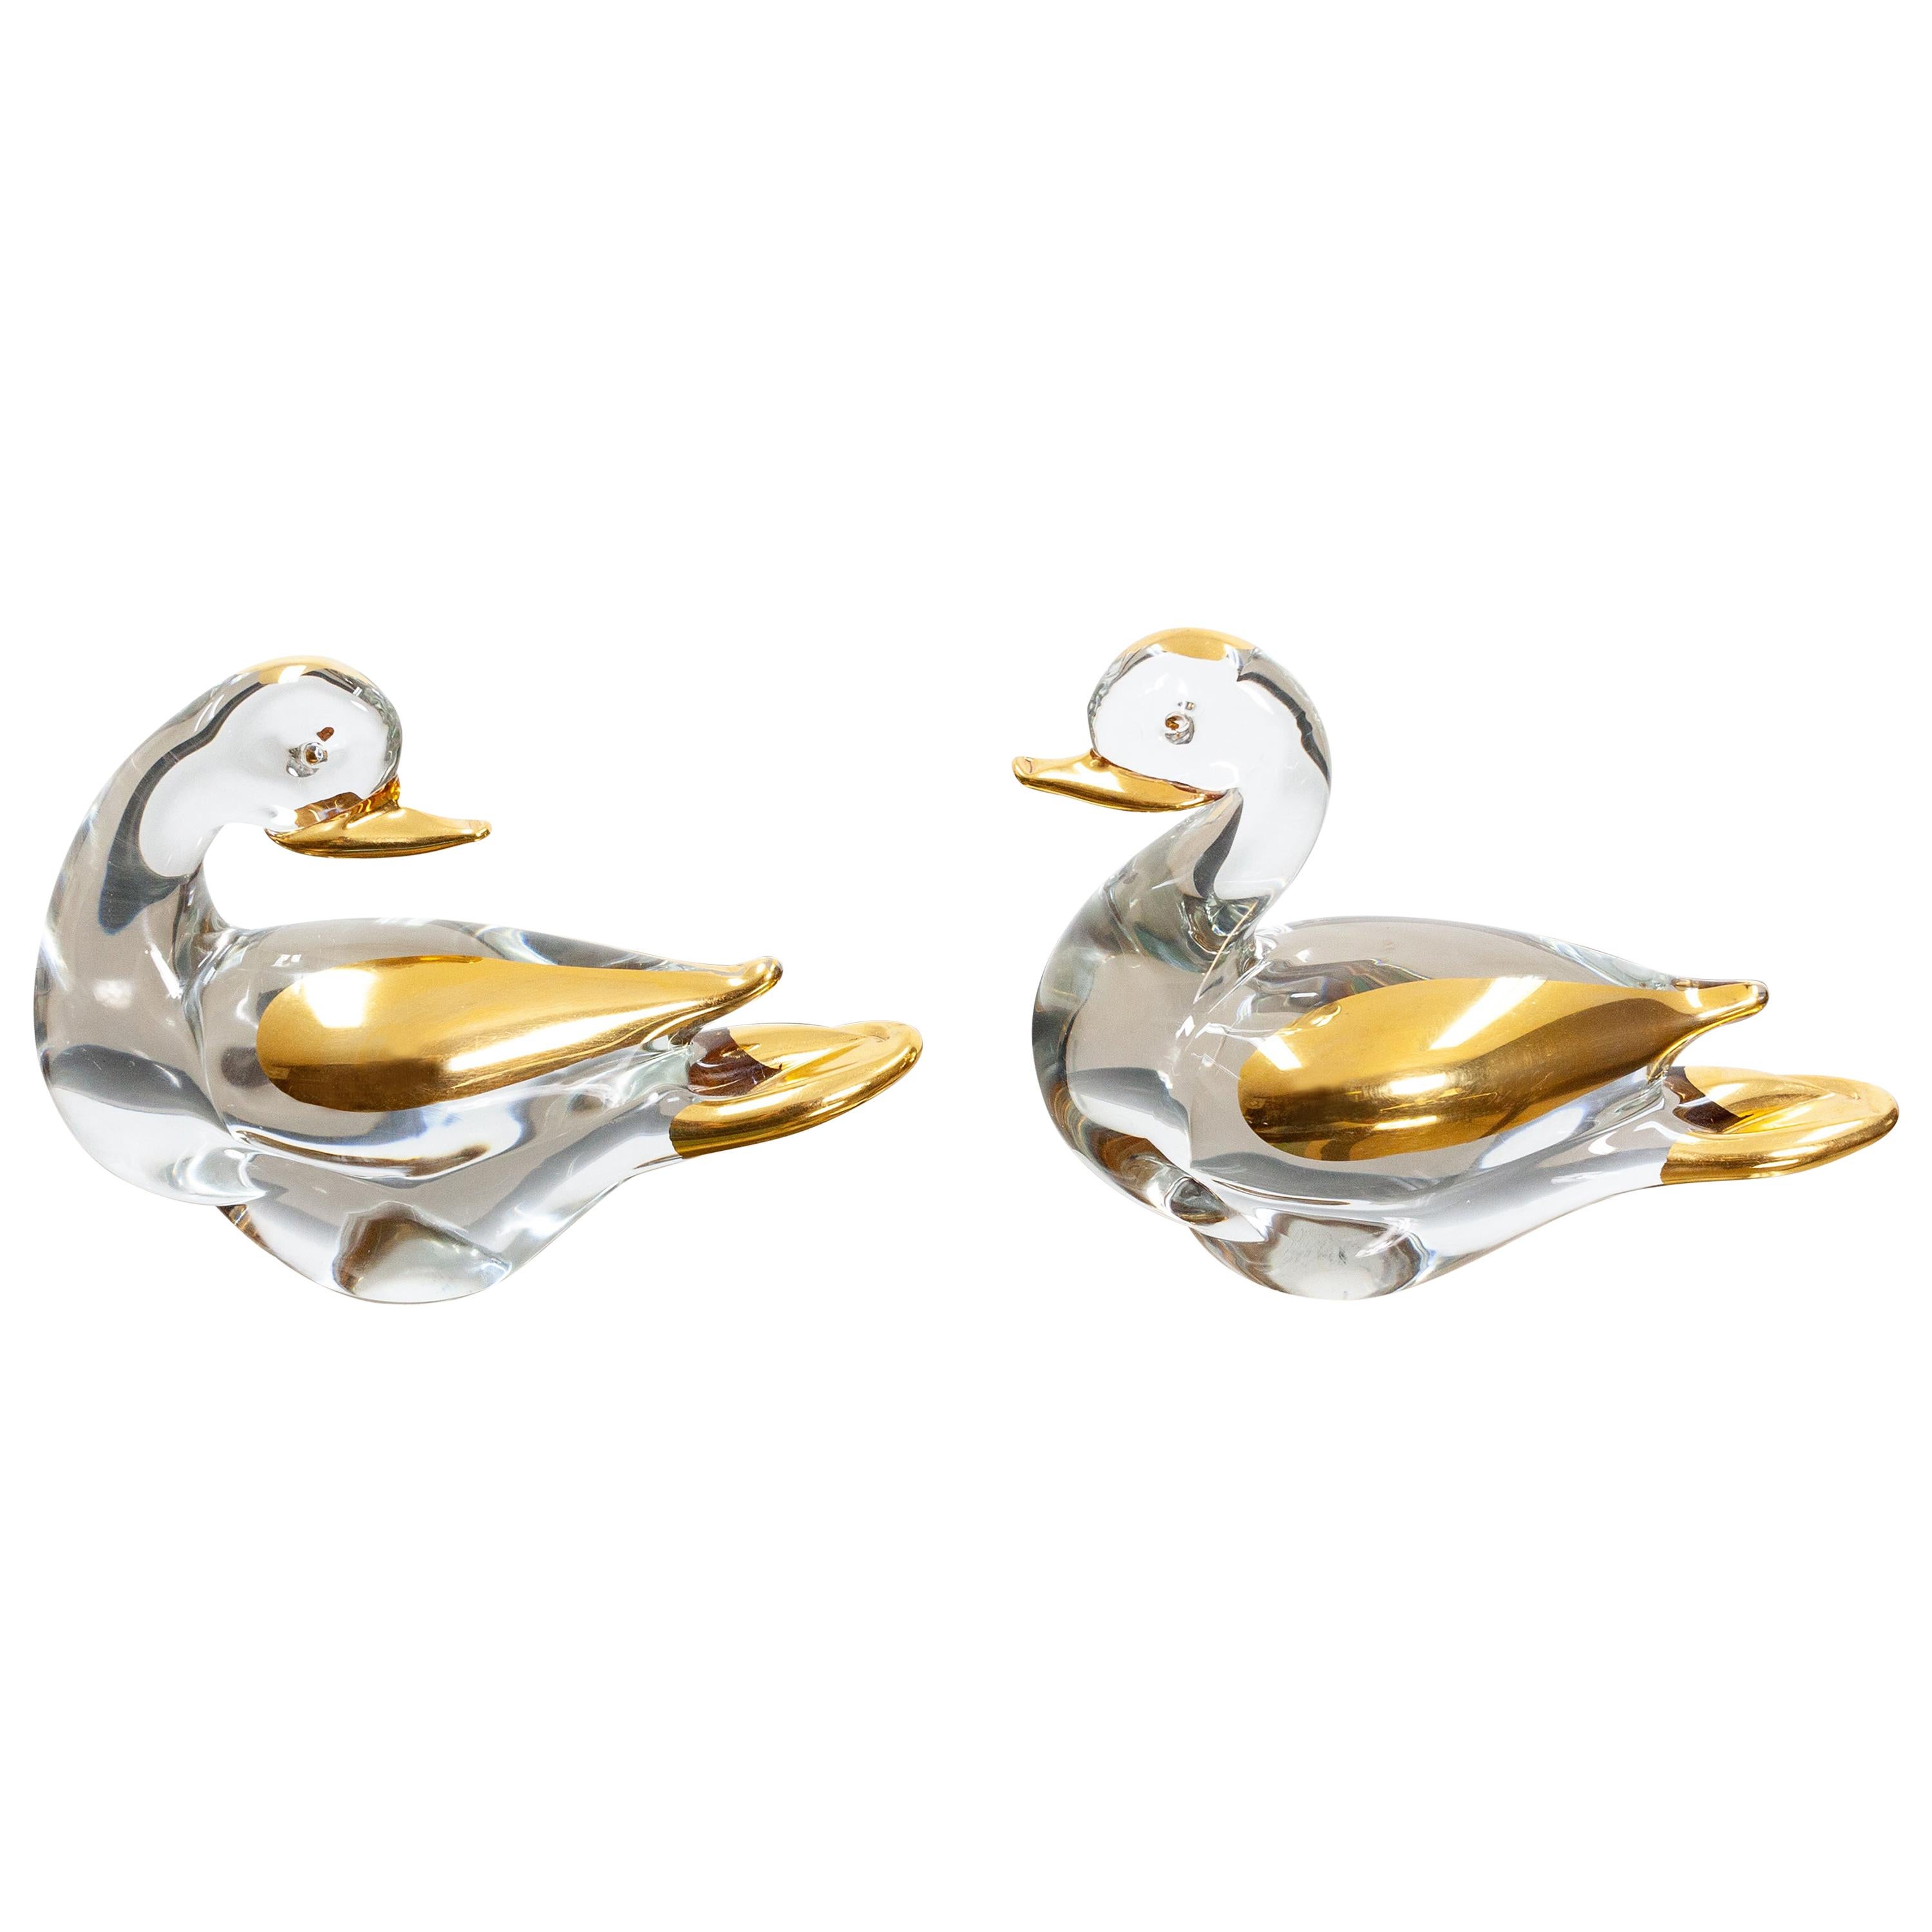 Two Murano Ducks Glass 24 Carat Gold, 1980s